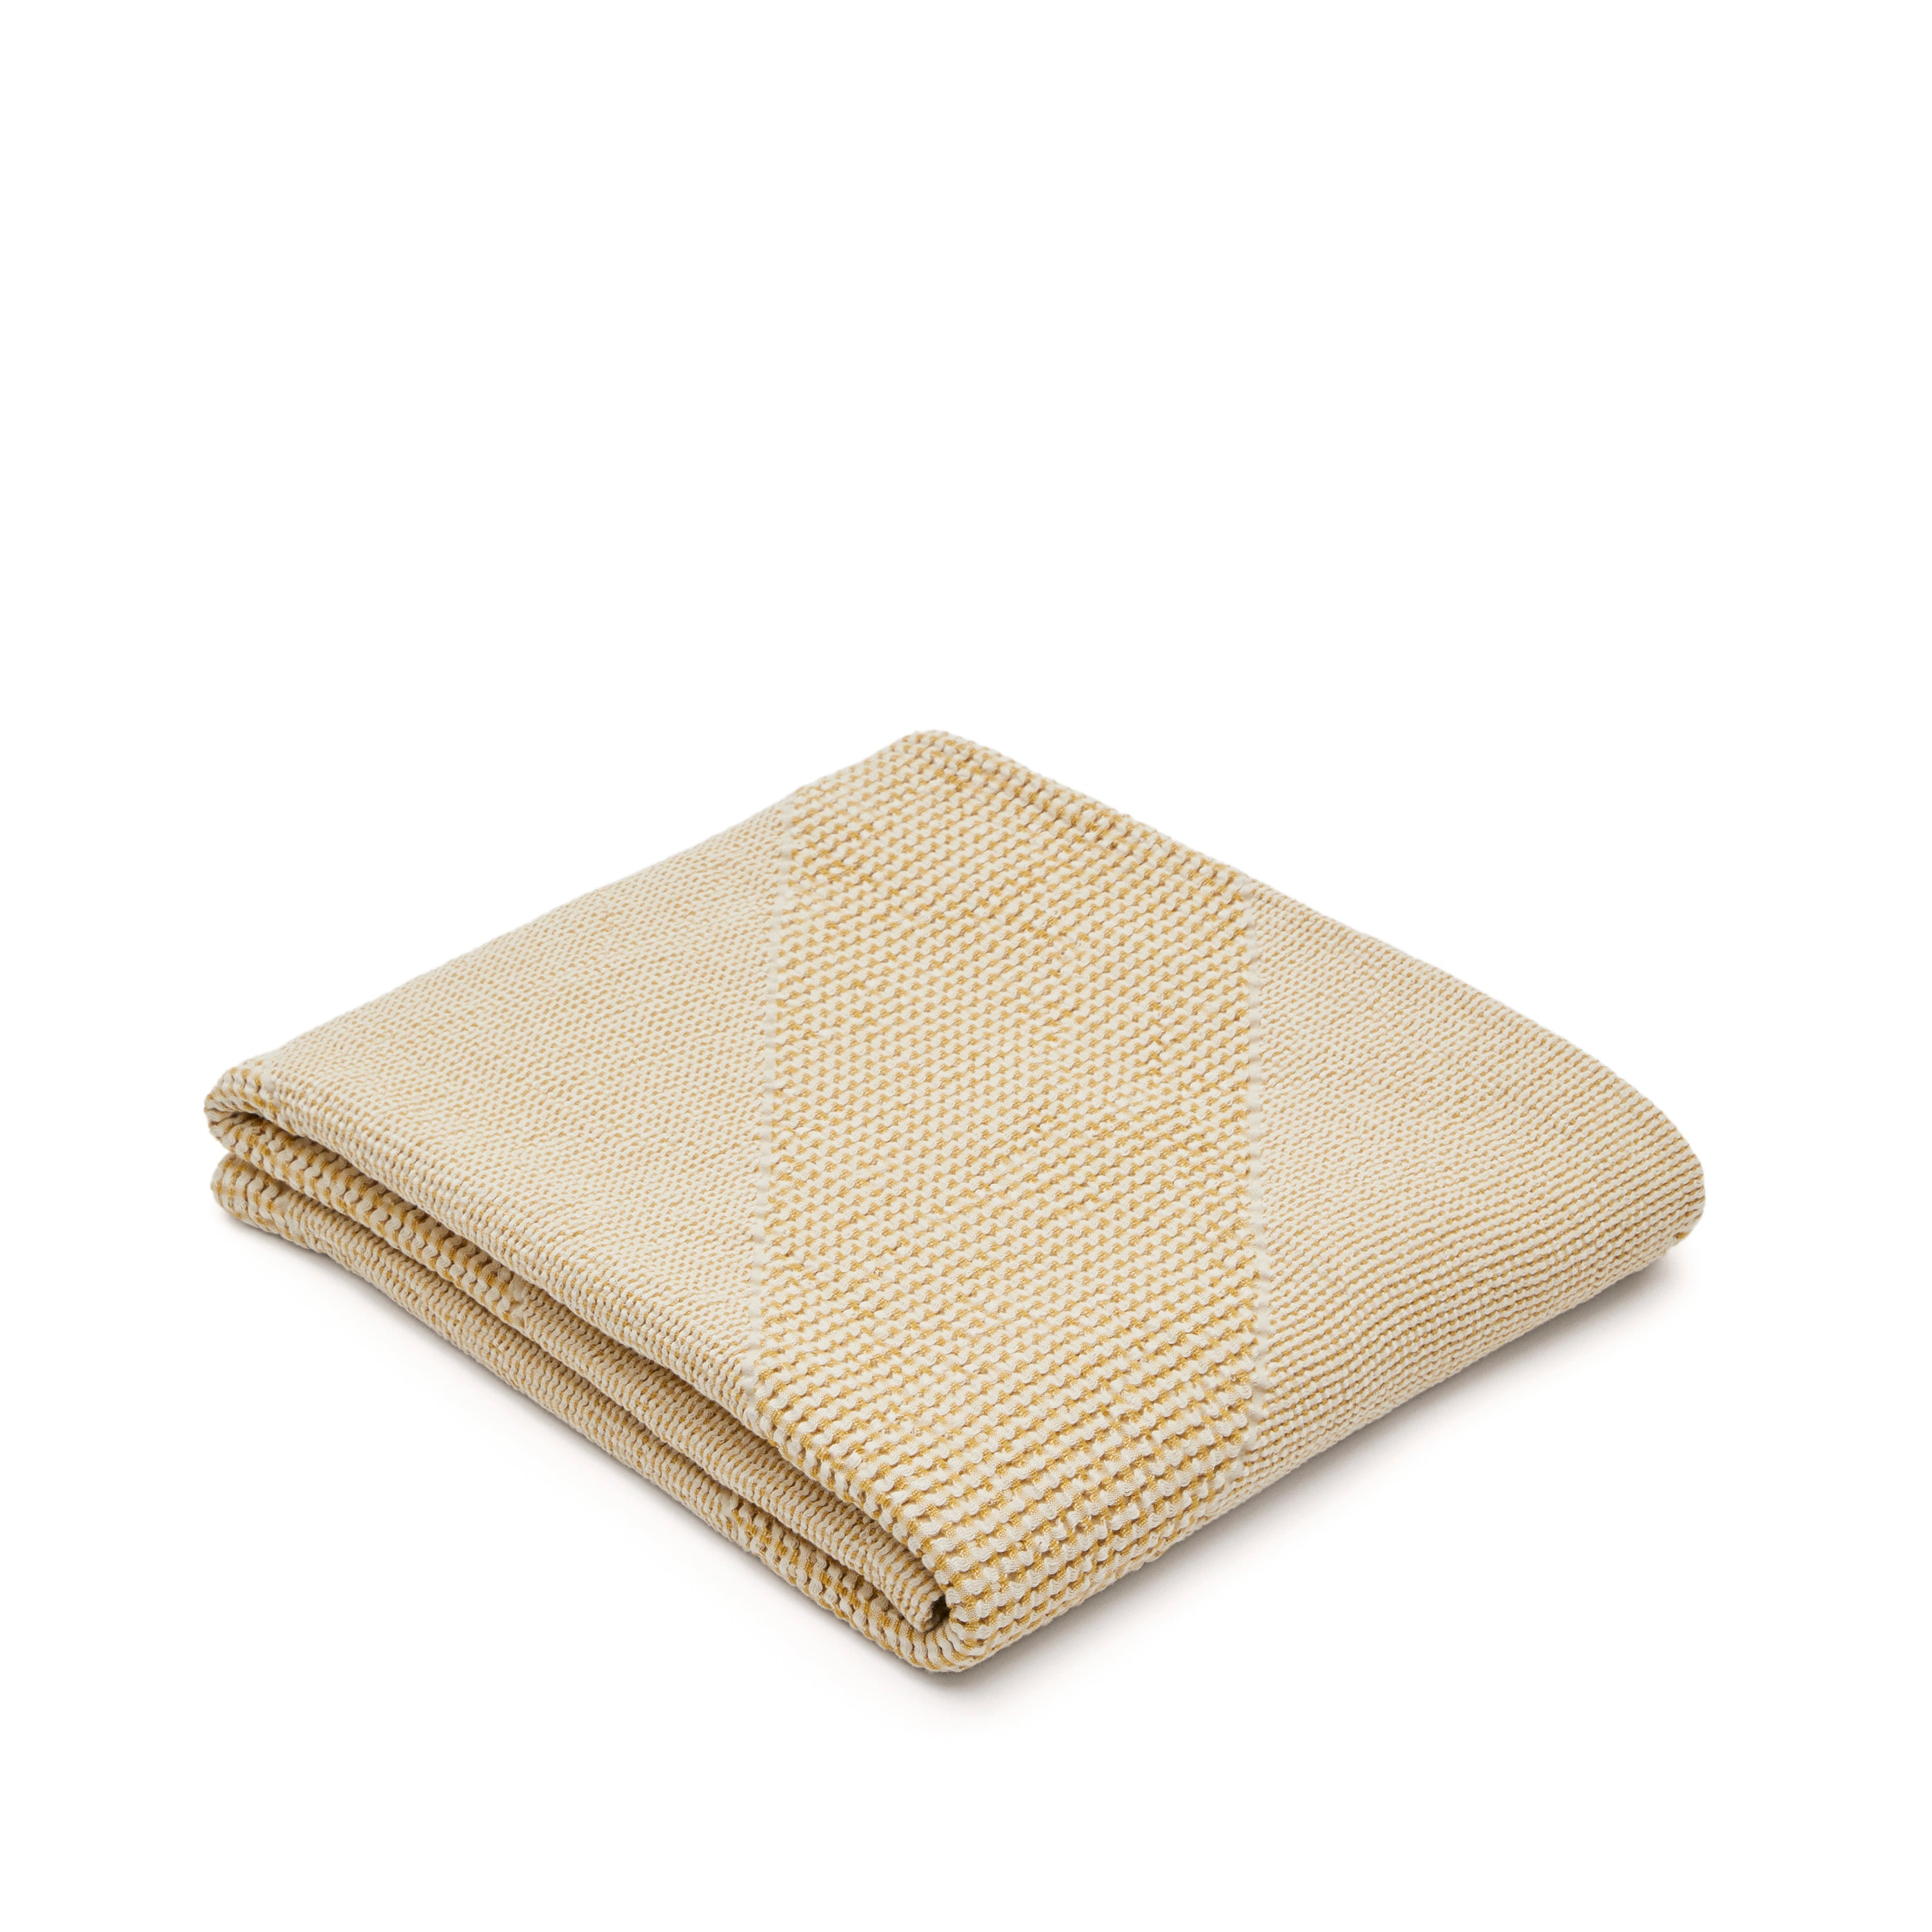 Seti takaró 100% pamutból mustár színben 130 x 170 cm